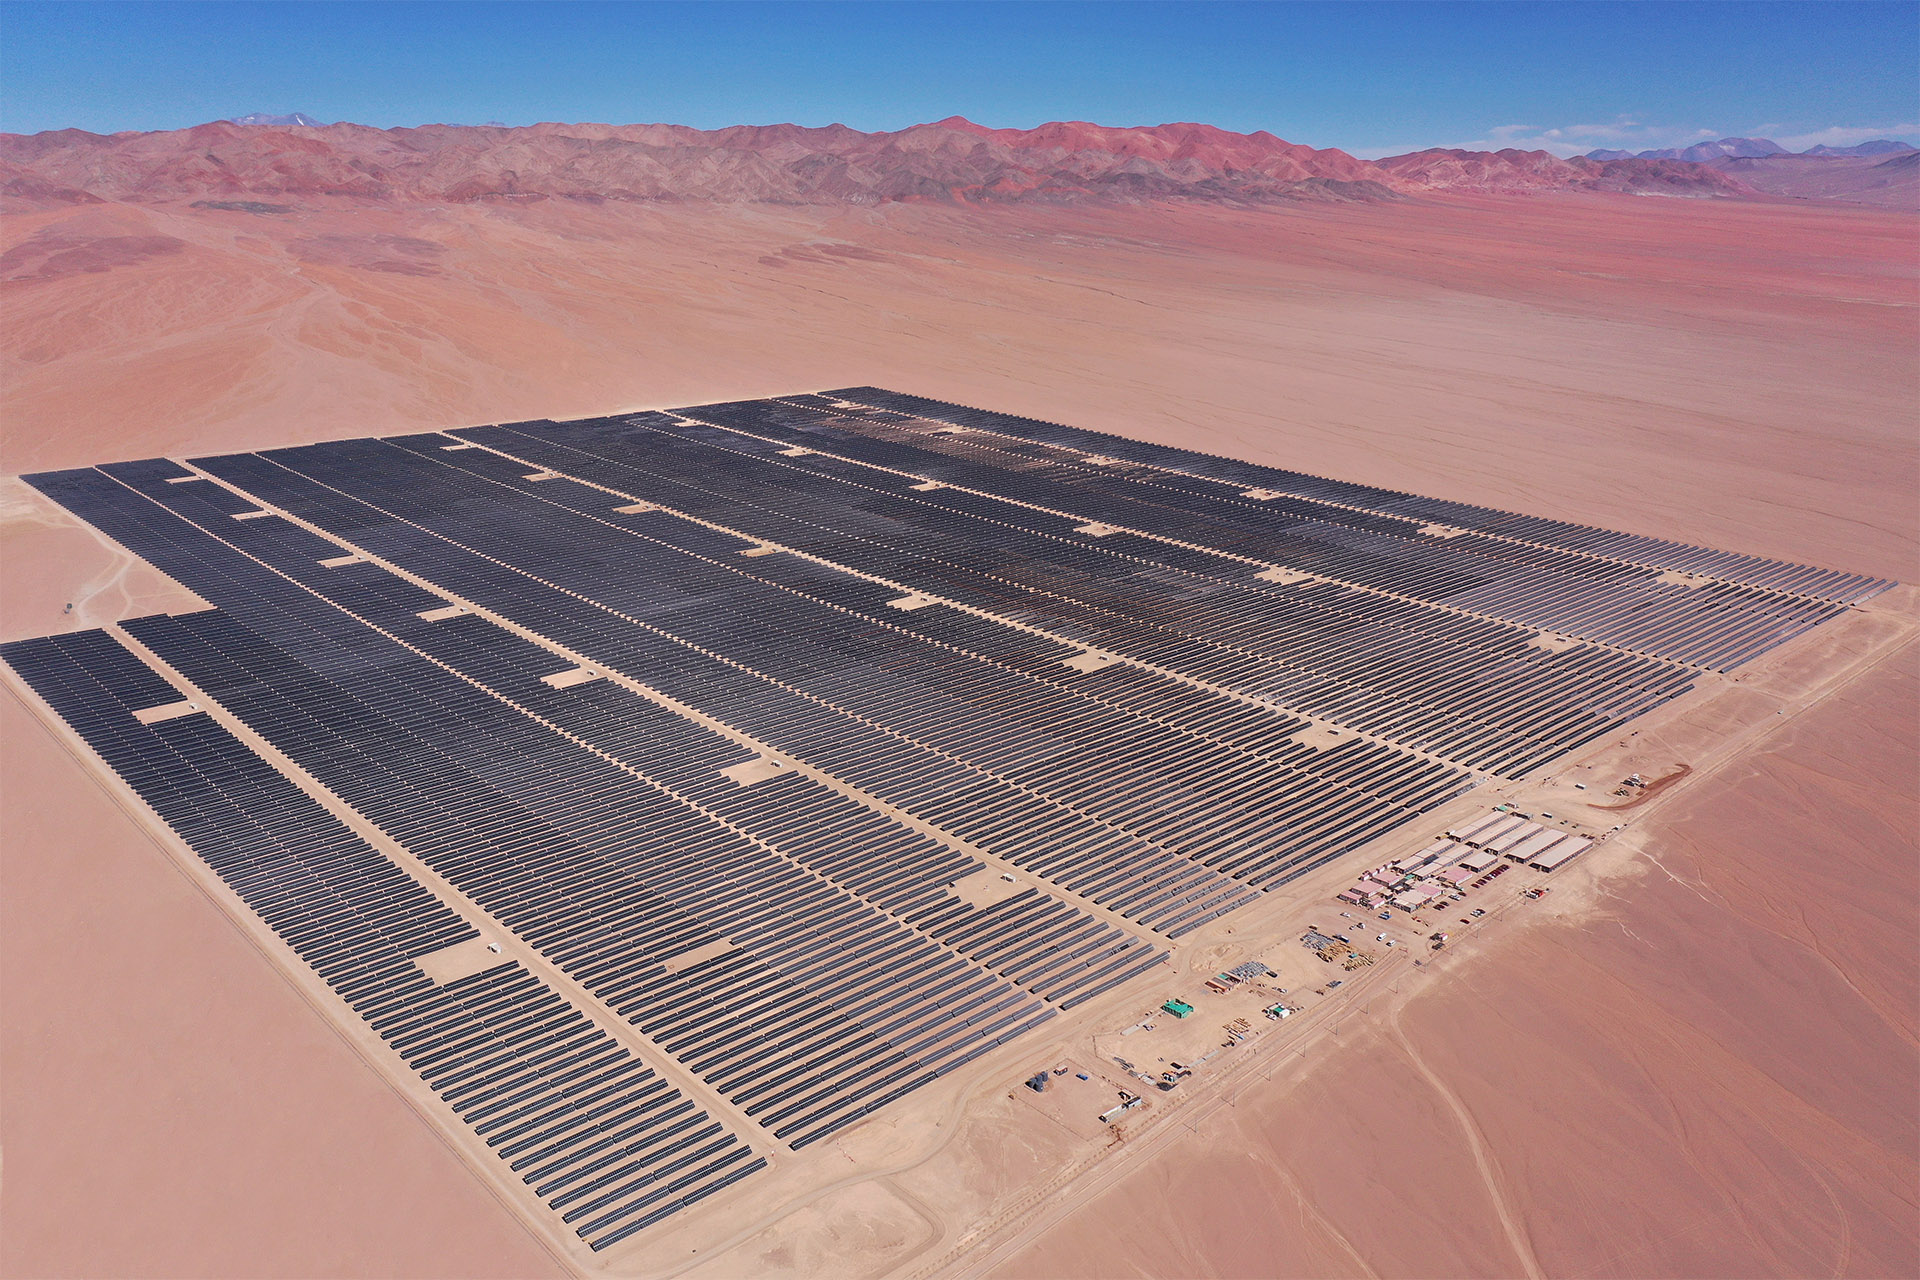 Vista aérea de una planta fotovoltaica en Chile